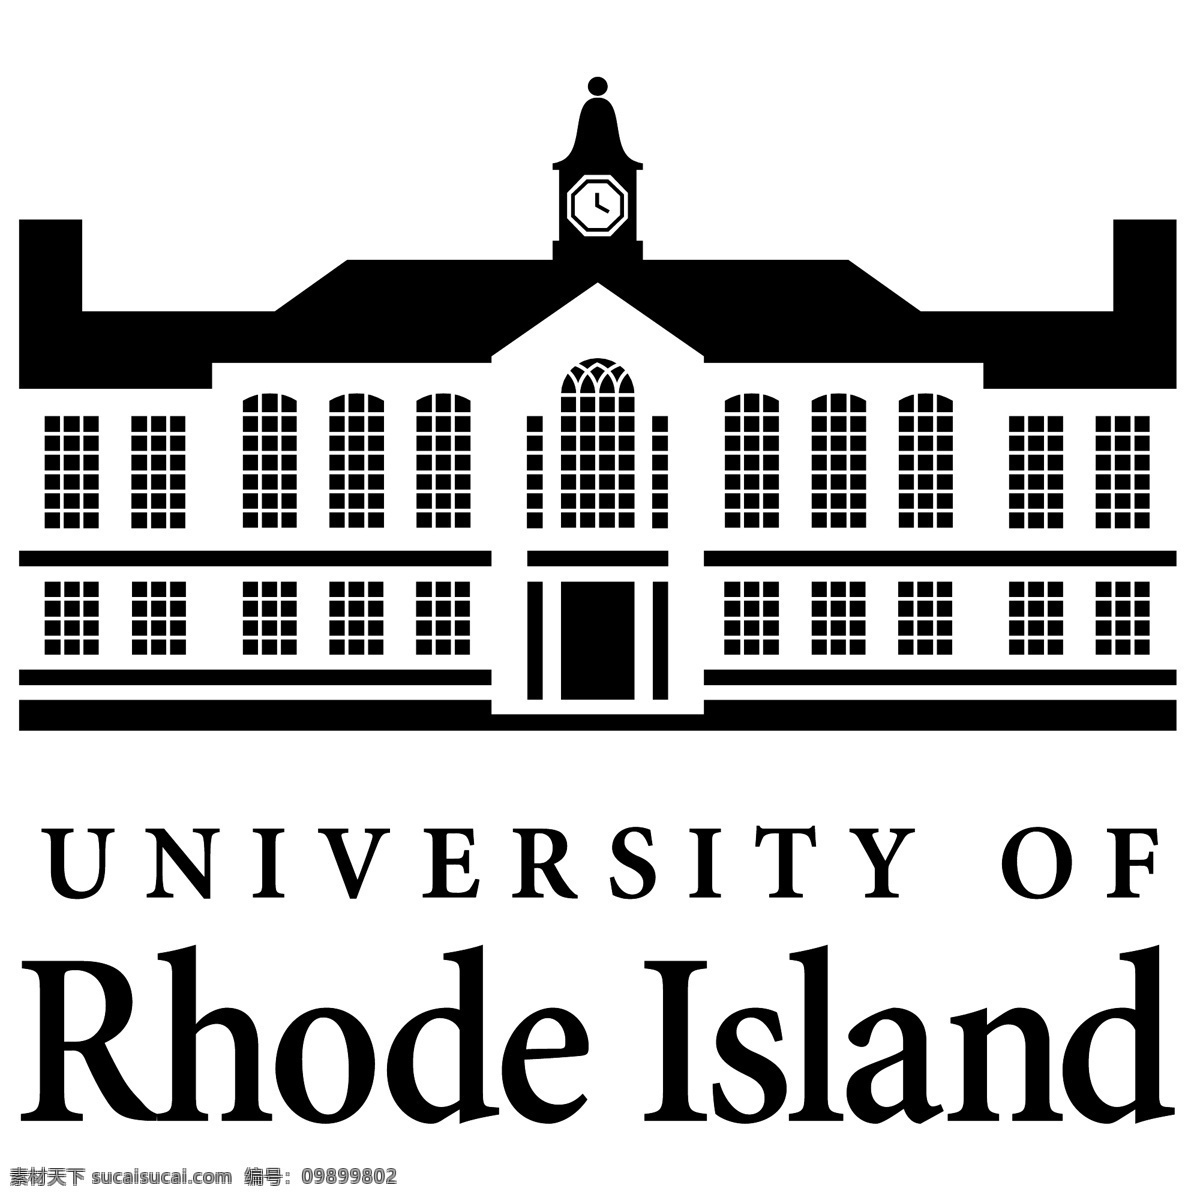 罗德岛 大学 免费 罗得岛 标志 标识 psd源文件 logo设计